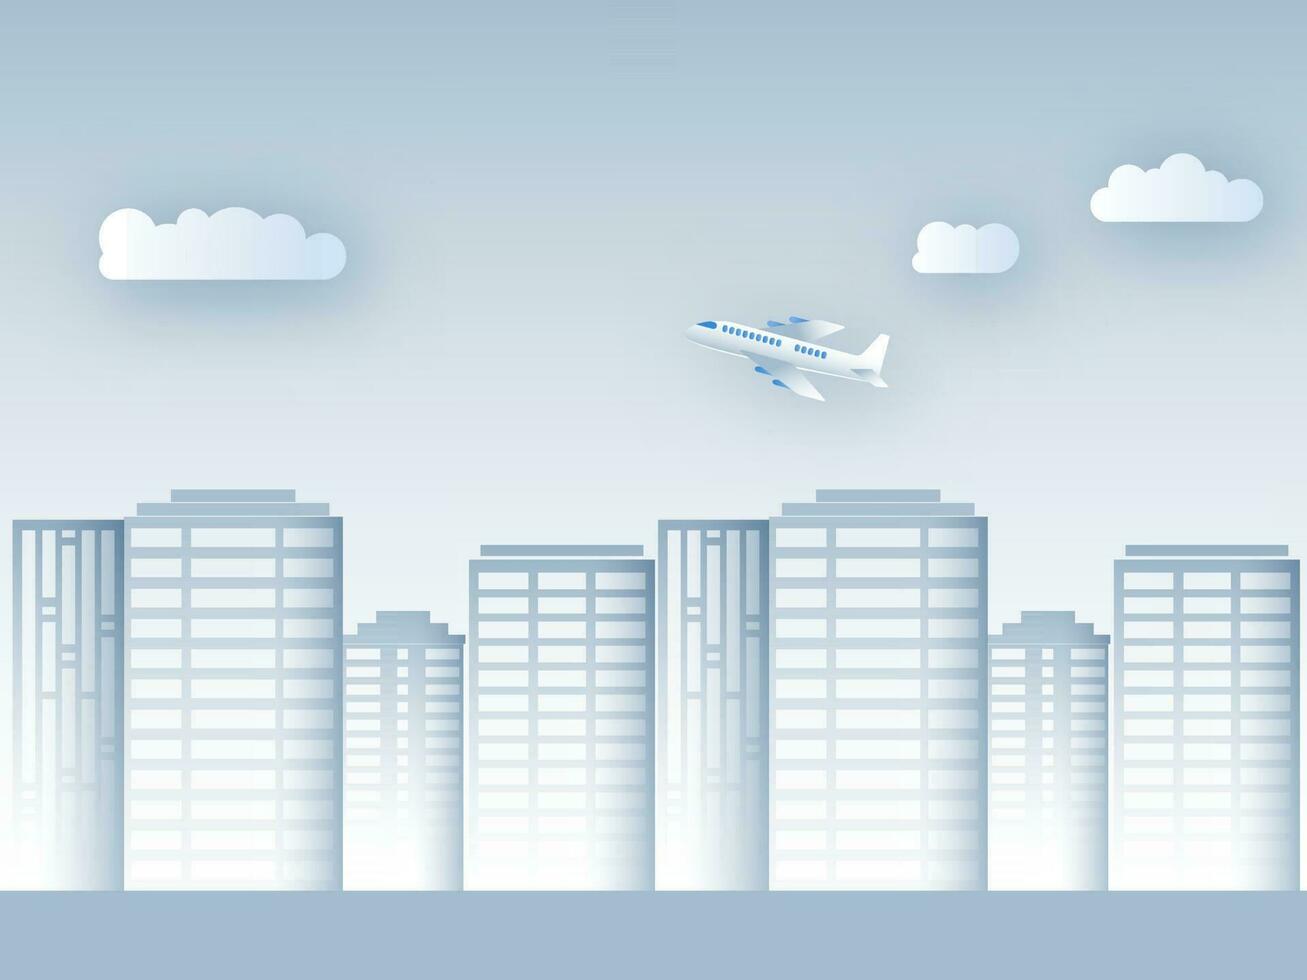 papper skära bostads- byggnader med moln och flygplan på glansig ljus blå bakgrund. vektor